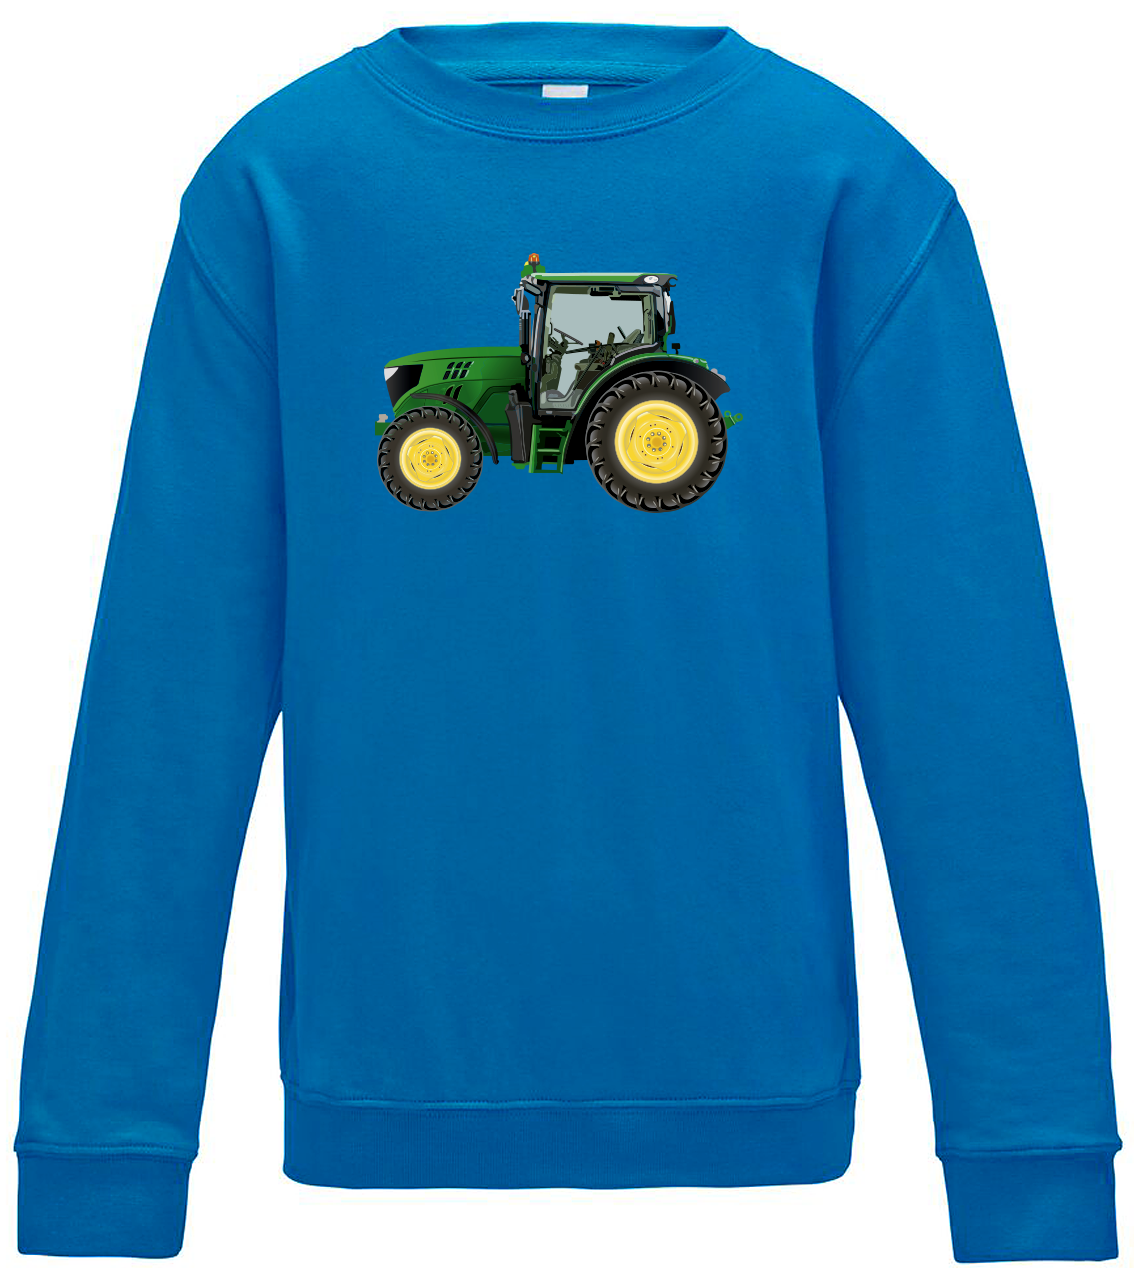 Dětská mikina s traktorem - Zelený traktor Velikost: 5/6 (110/116), Barva: Modrá